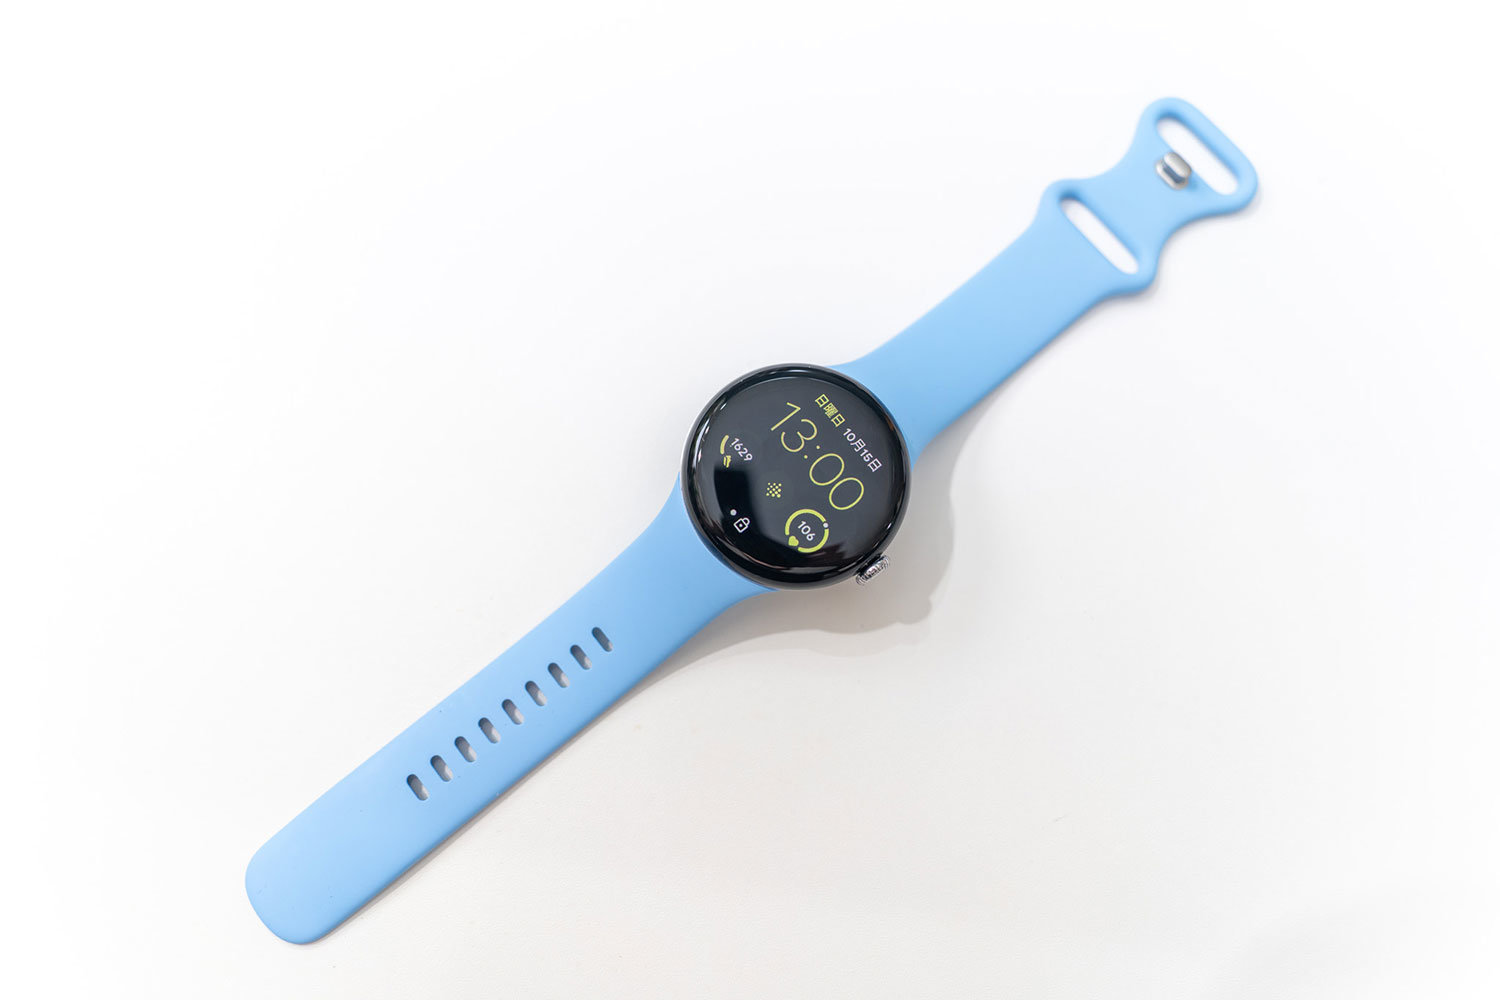 Googleの新型スマートウォッチ「Pixel Watch 2」はどこが変わった